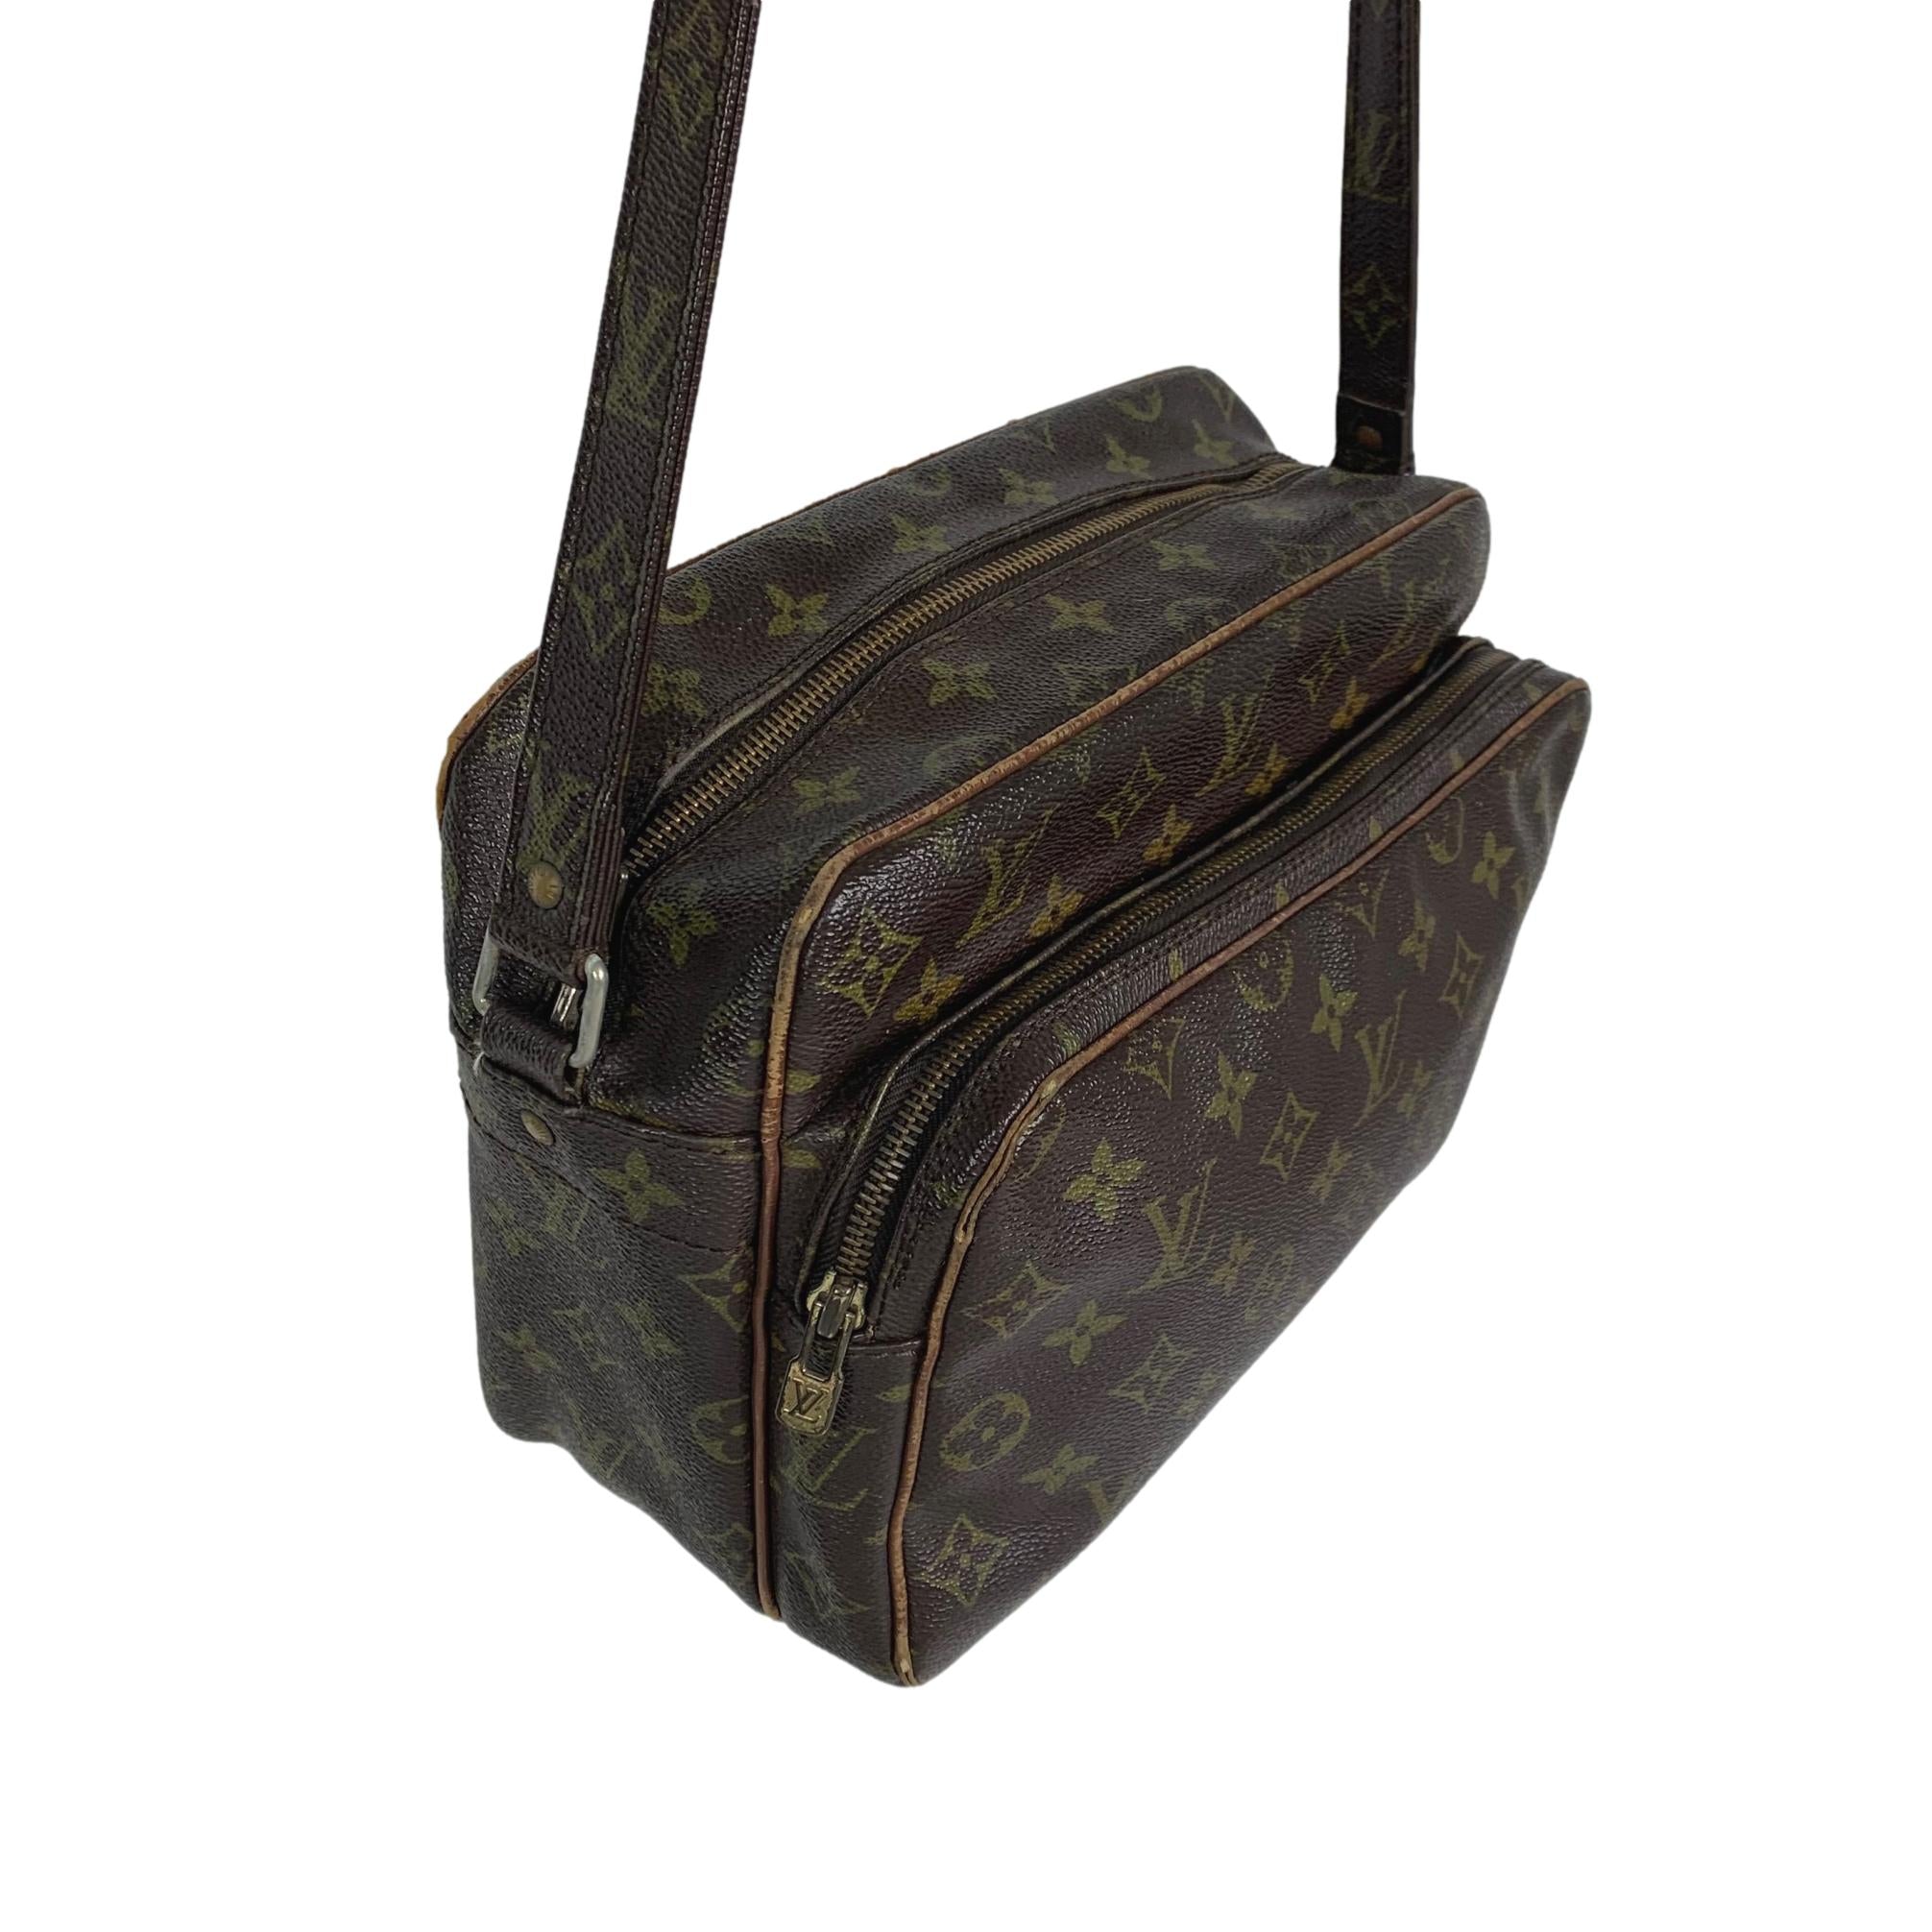 Vintage Louis Vuitton Monogram Bag – purchasegarments